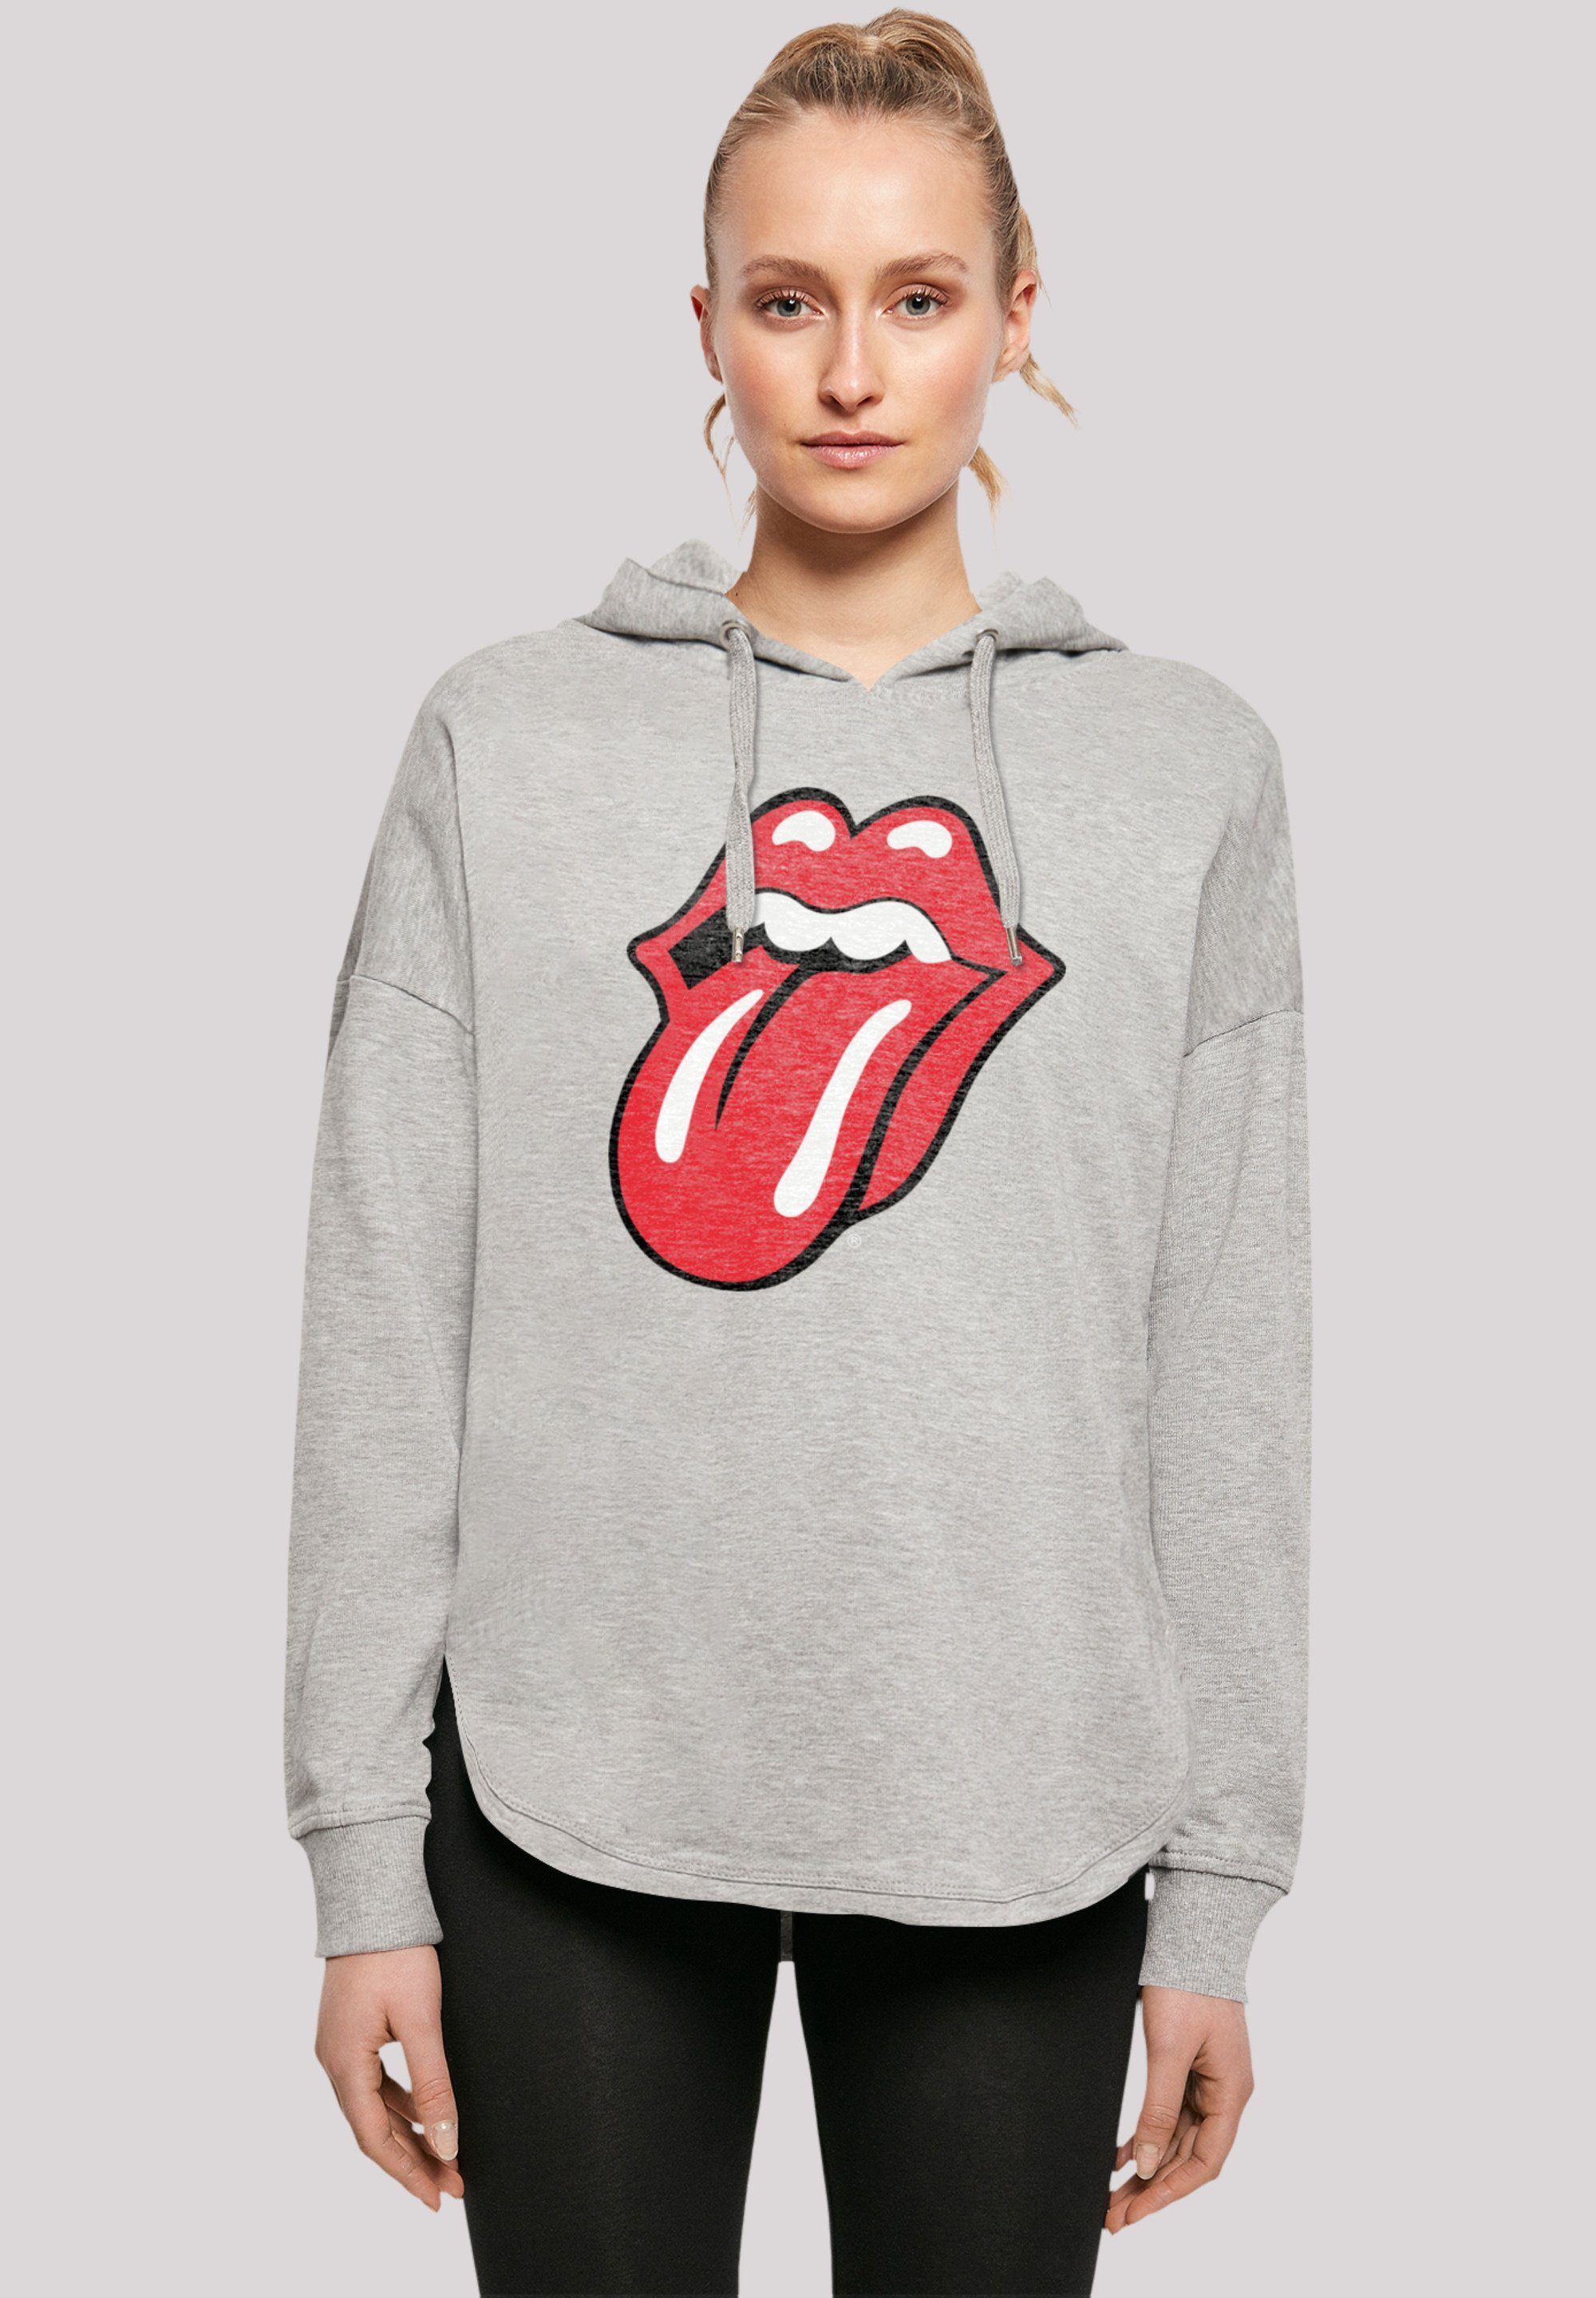 F4NT4STIC Kapuzenpullover The Rolling Stones Zunge Rot Print, Fällt weit  aus, bitte eine Größe kleiner bestellen | Hoodies